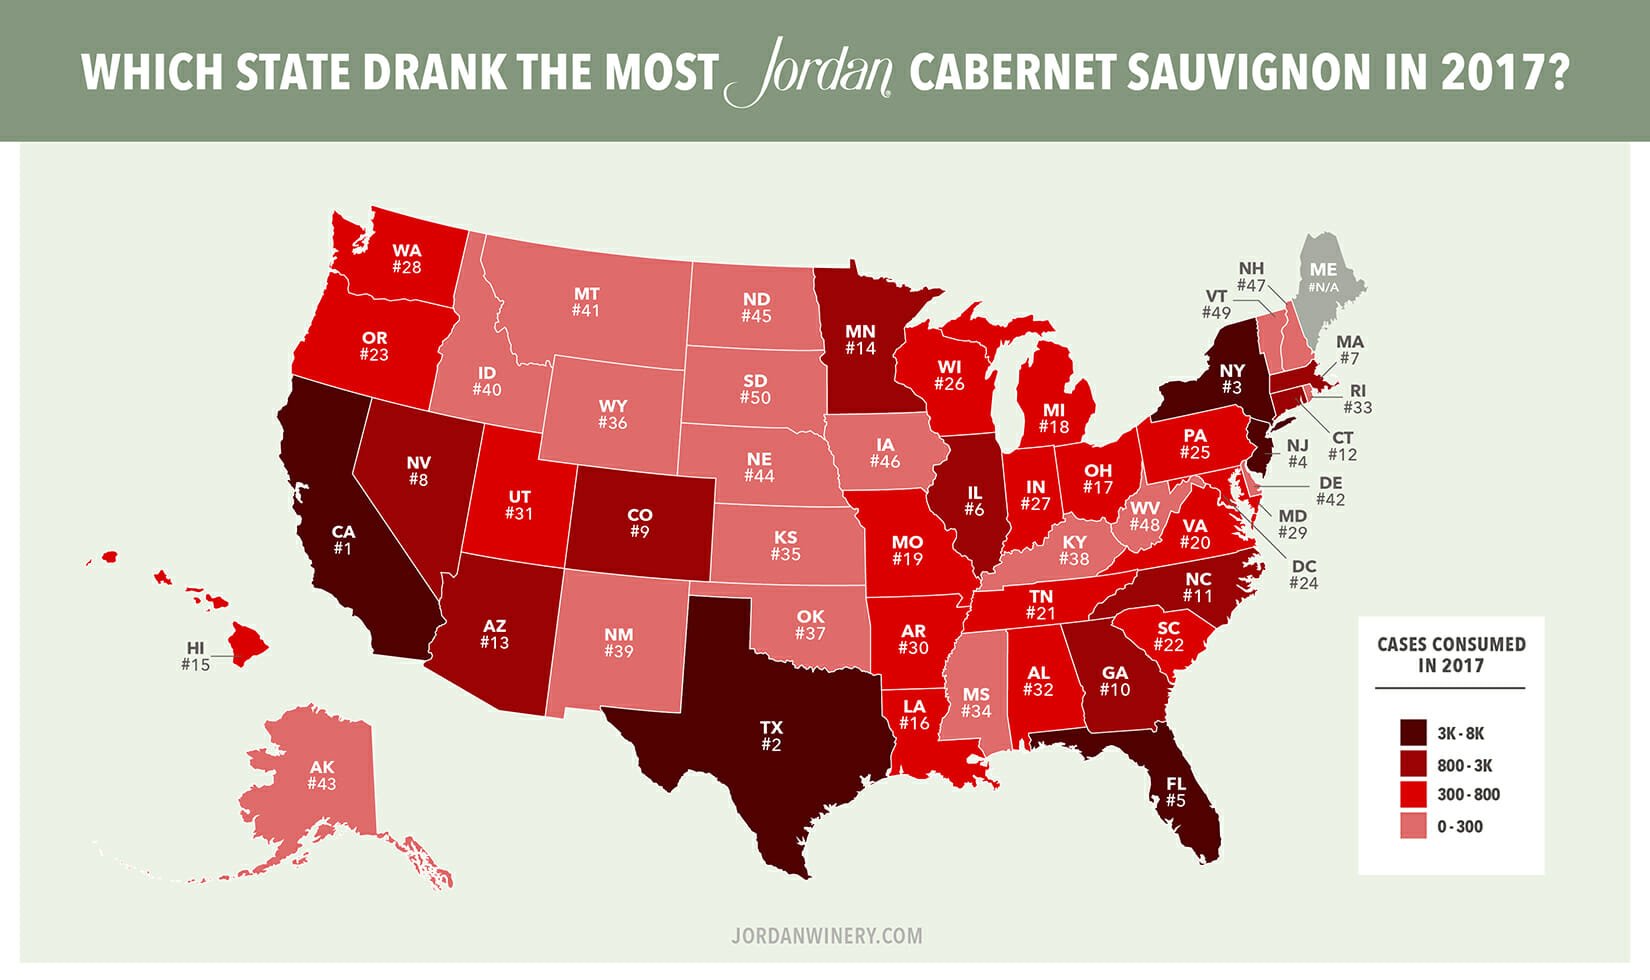 Jordan Cabernet Sauvignon Case Consumption by State Map